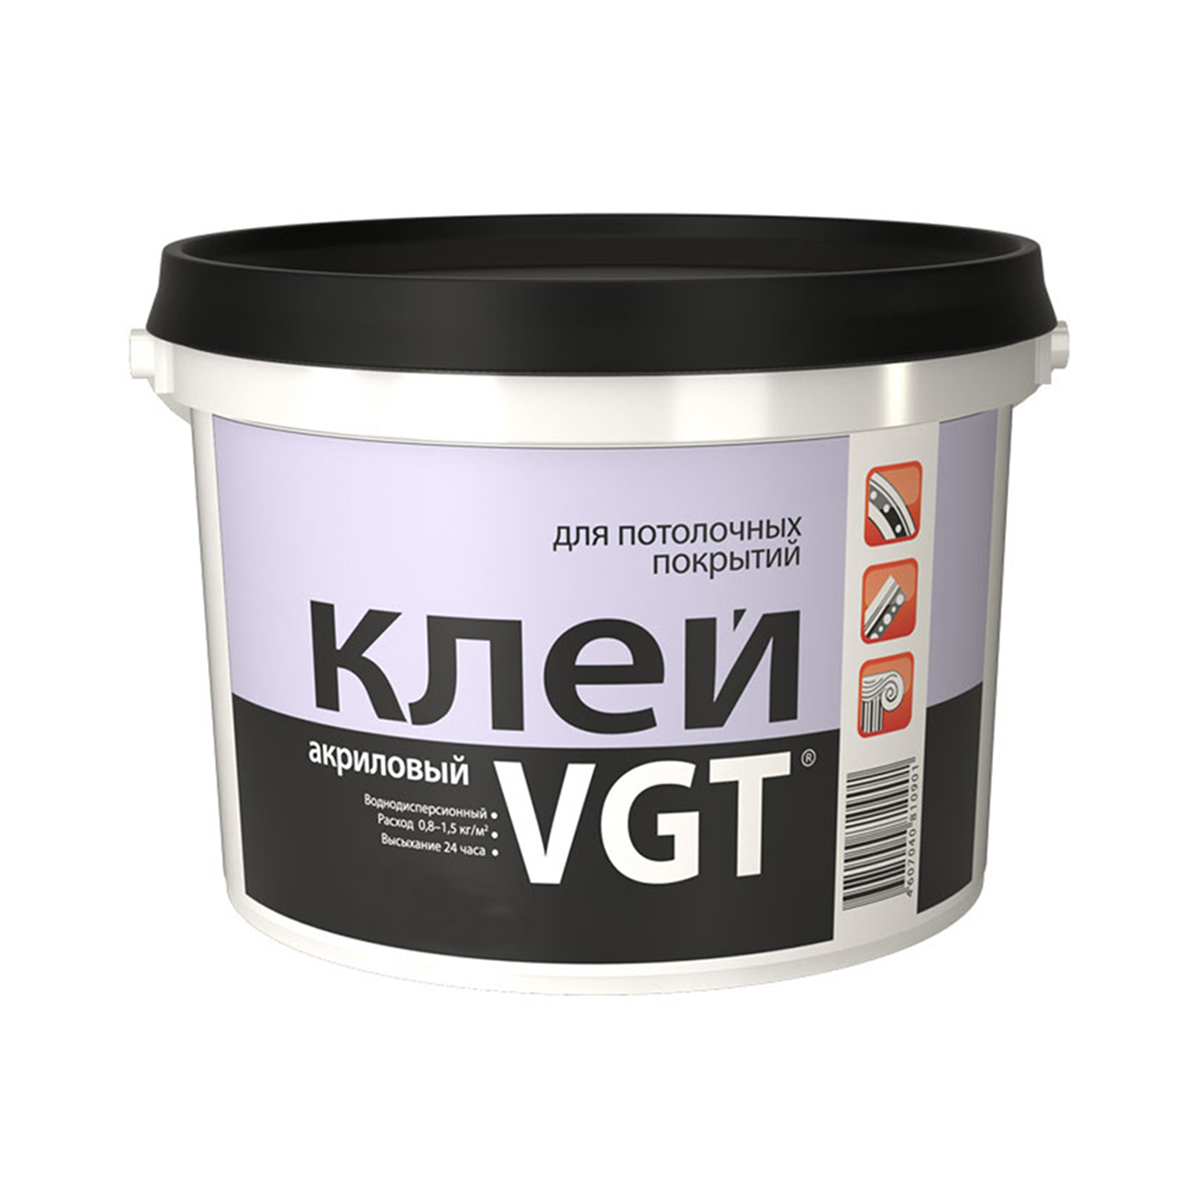 Клей для потолочных покрытий VGT, акриловый, 0,5 кг клей для напольных покрытий рогнеда